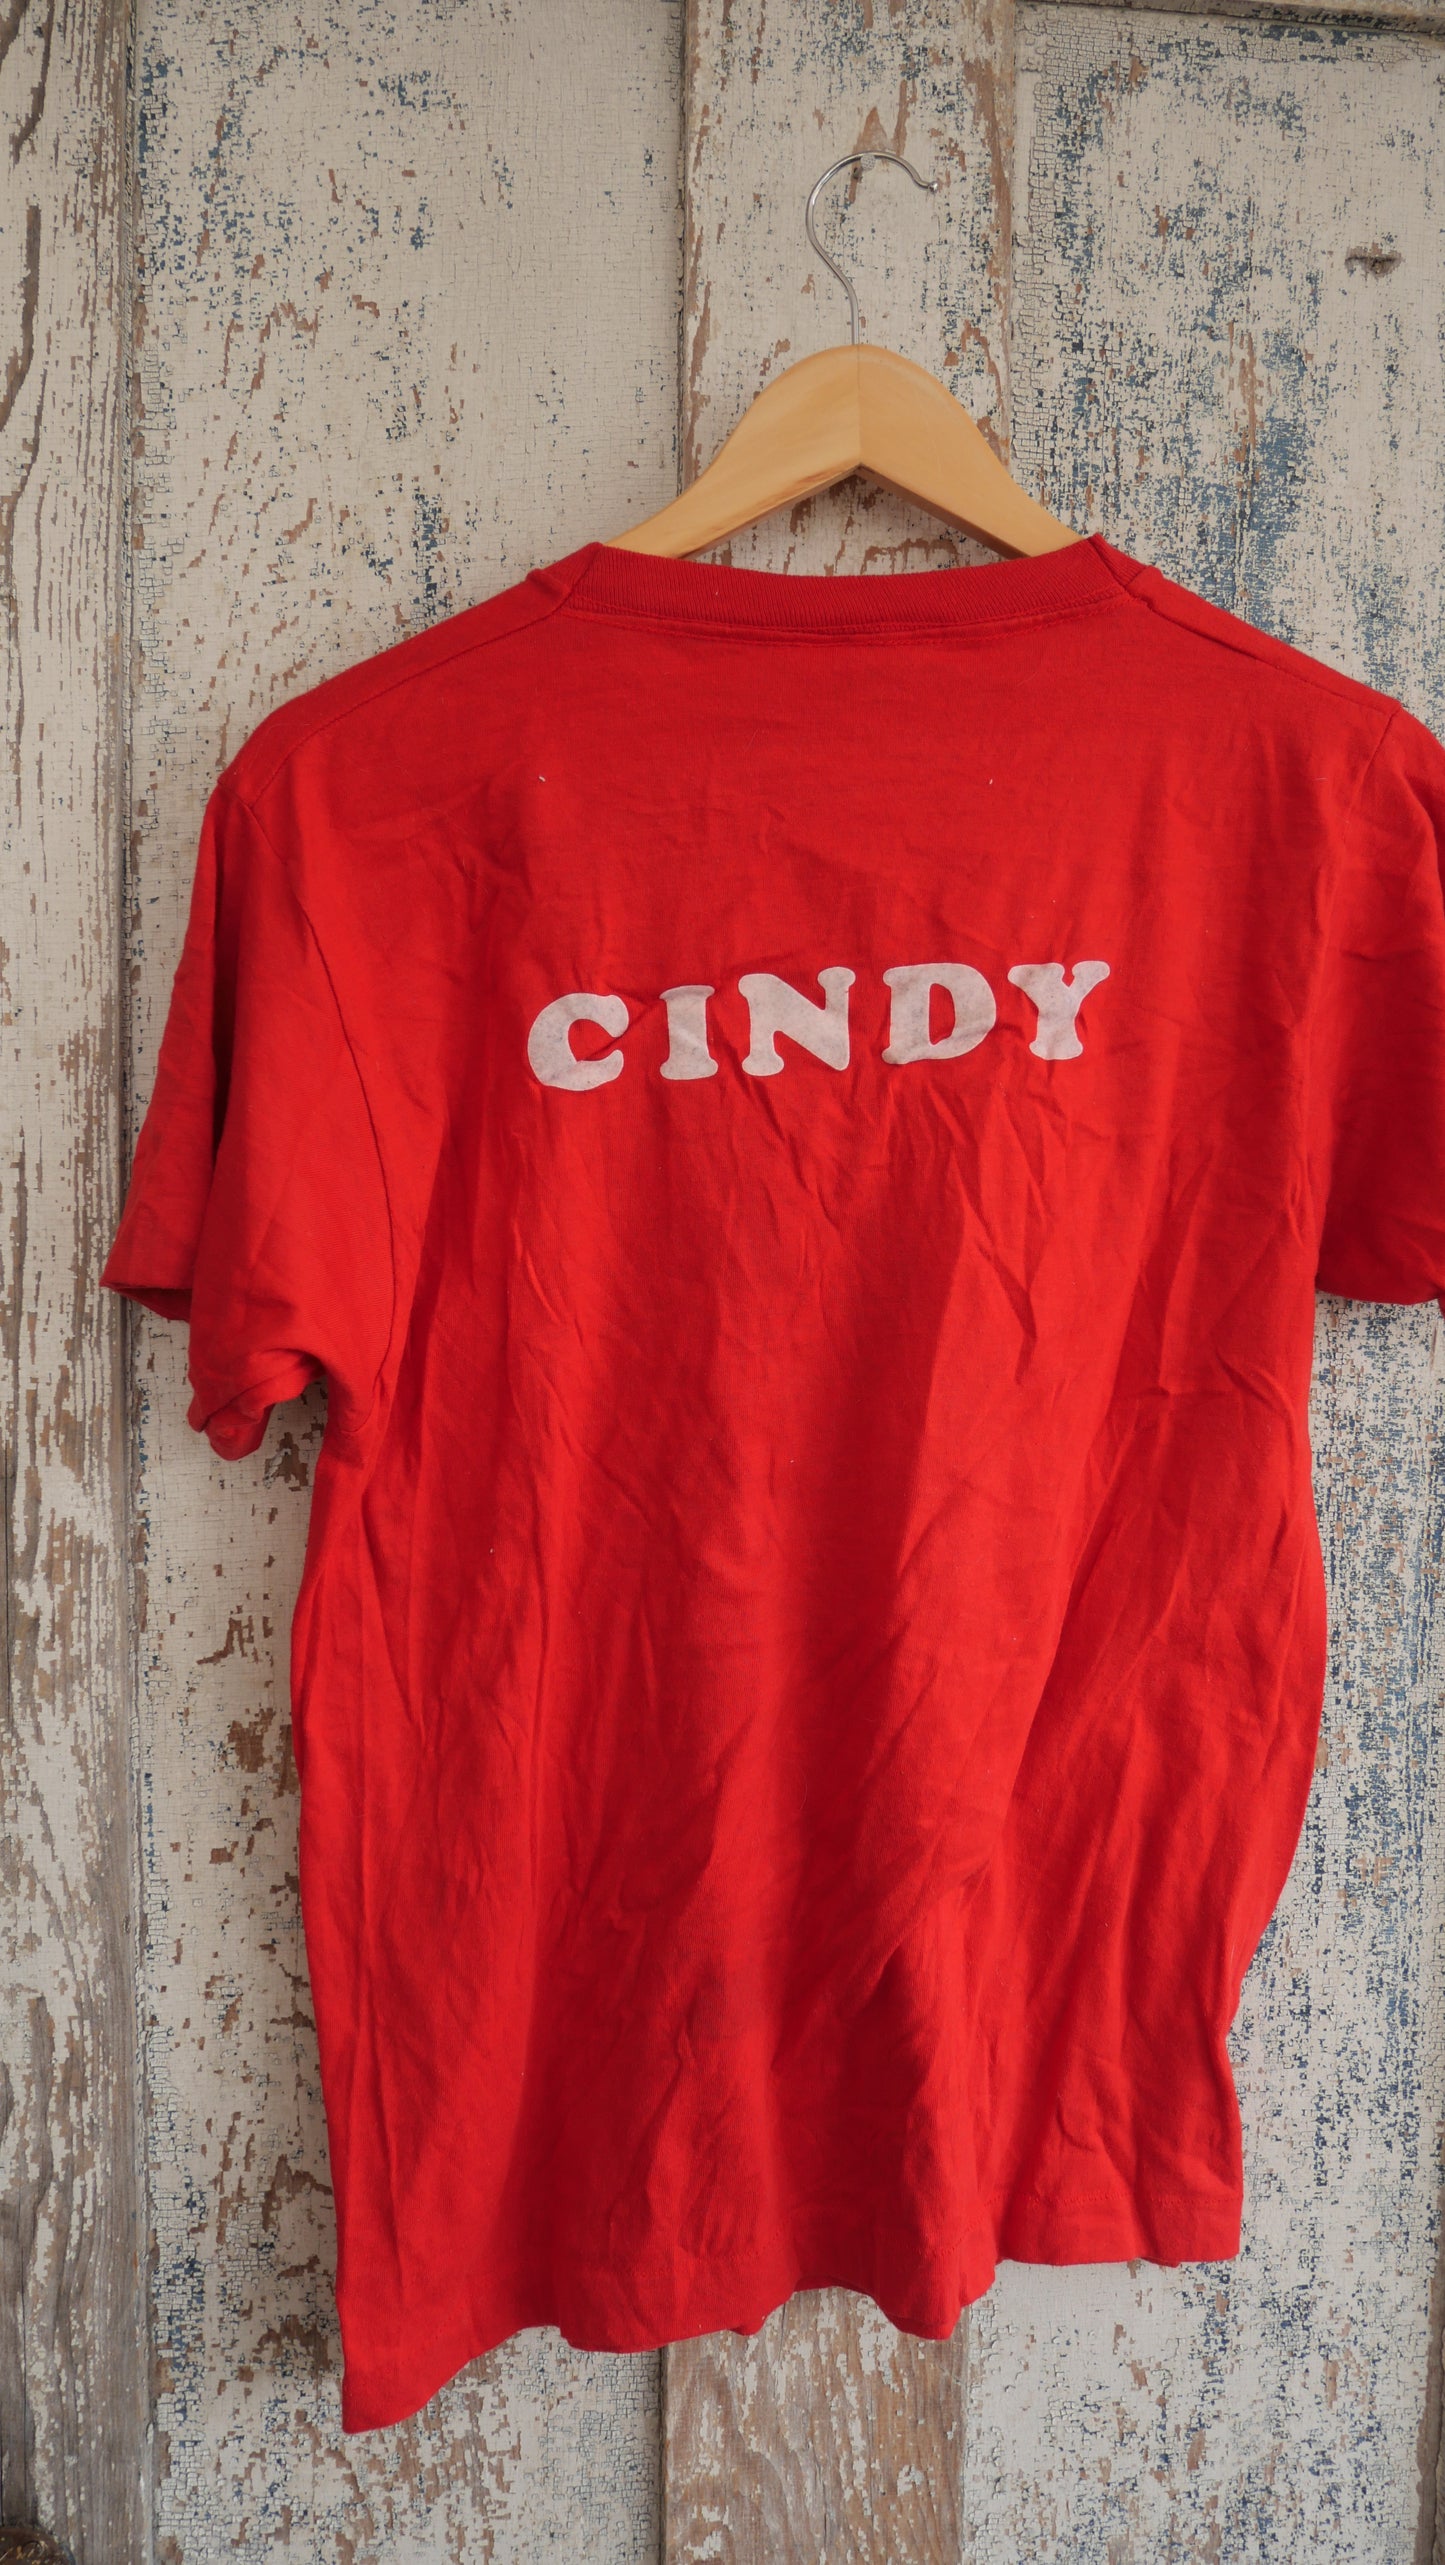 1980s "Cindy" Tee | M